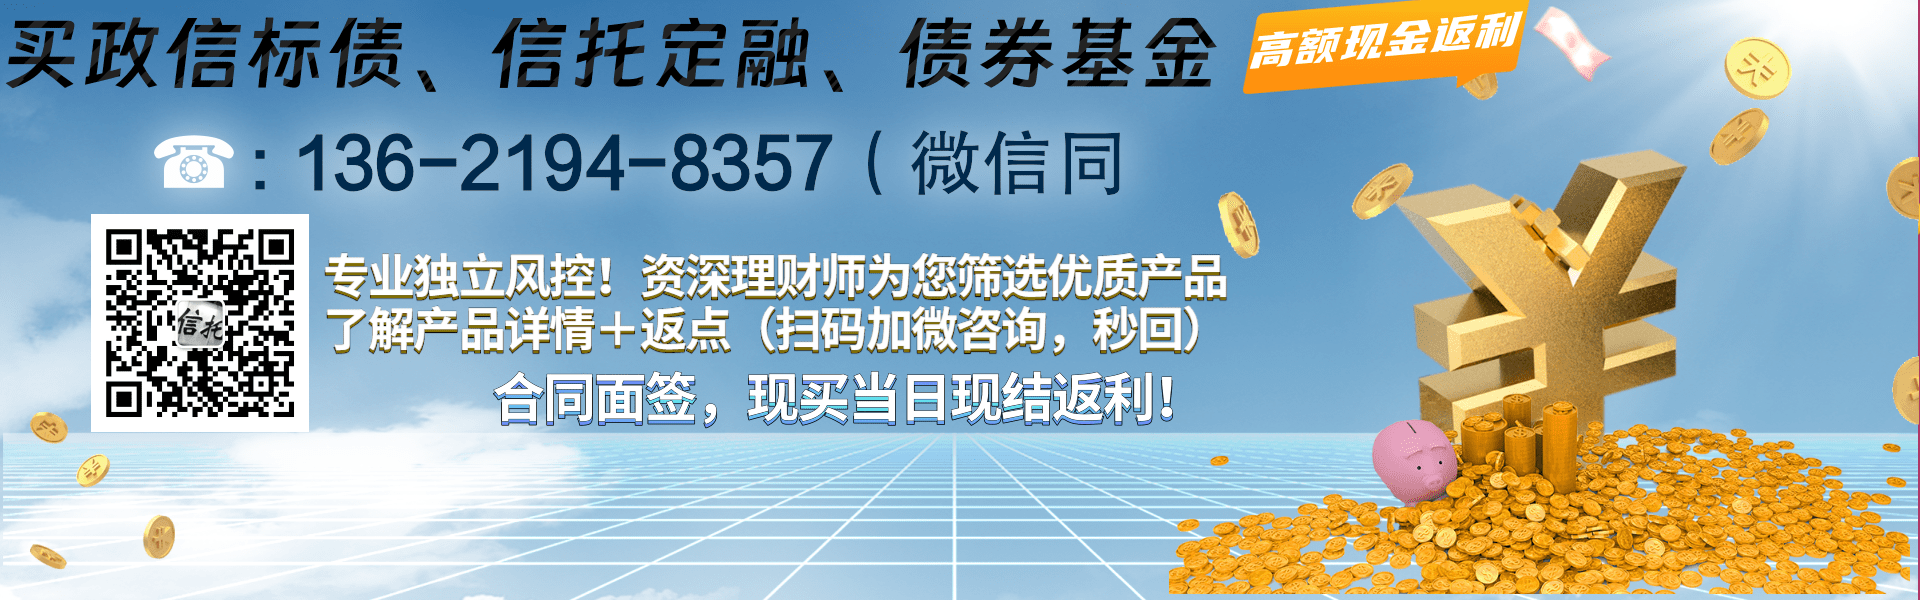 西安曲江临潼旅游投资2022资产收益权项目